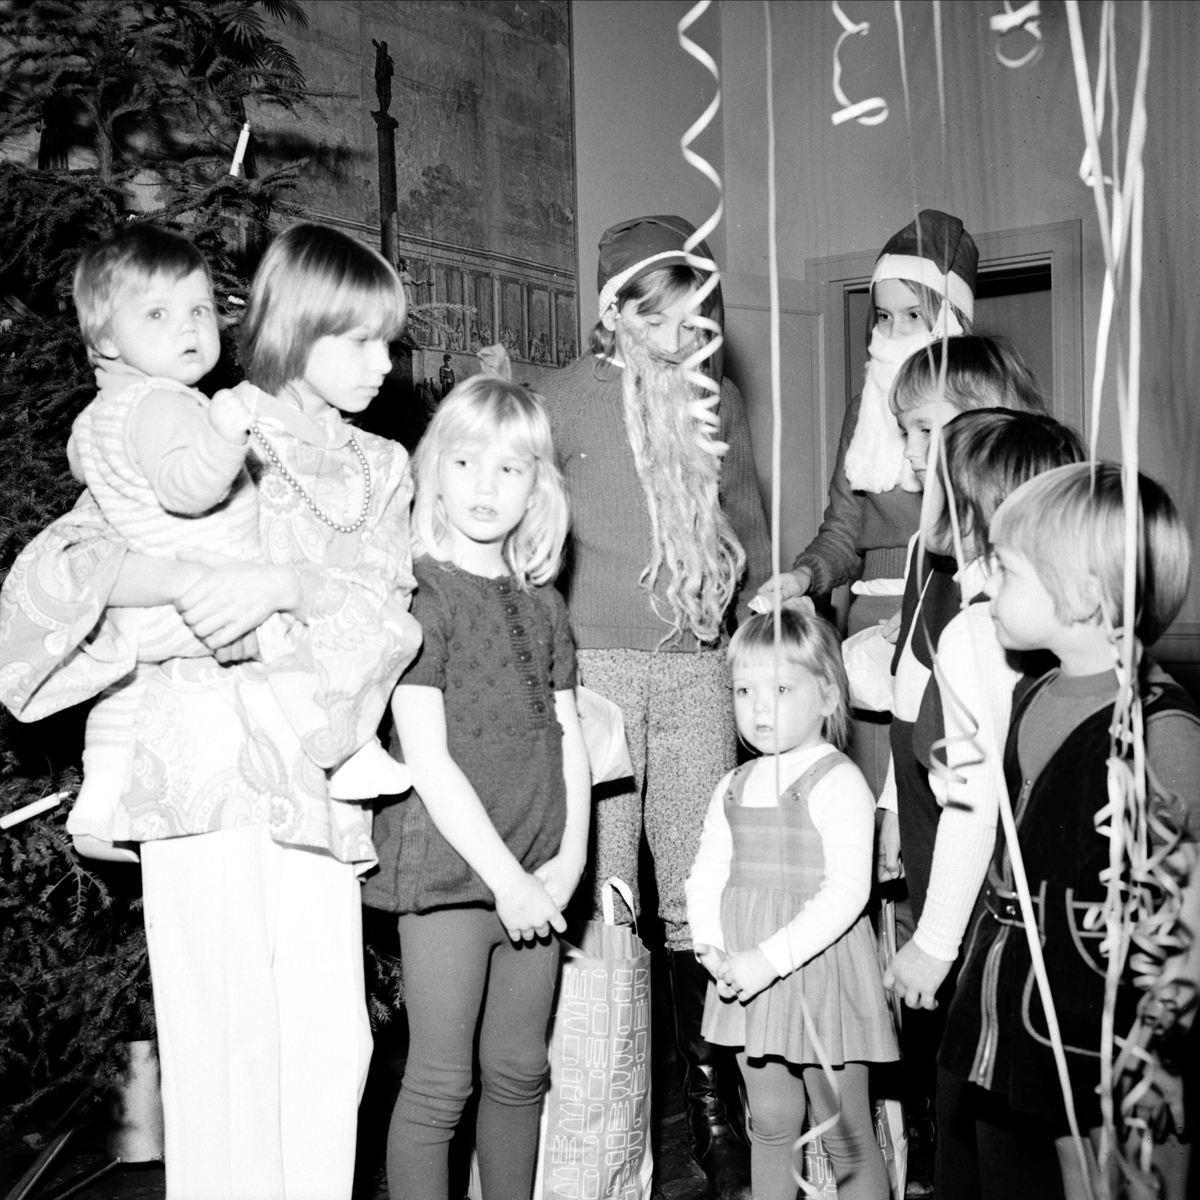 Söderfors husmorsförening har julfest för barn, Söderfors, Uppland janauri 1973